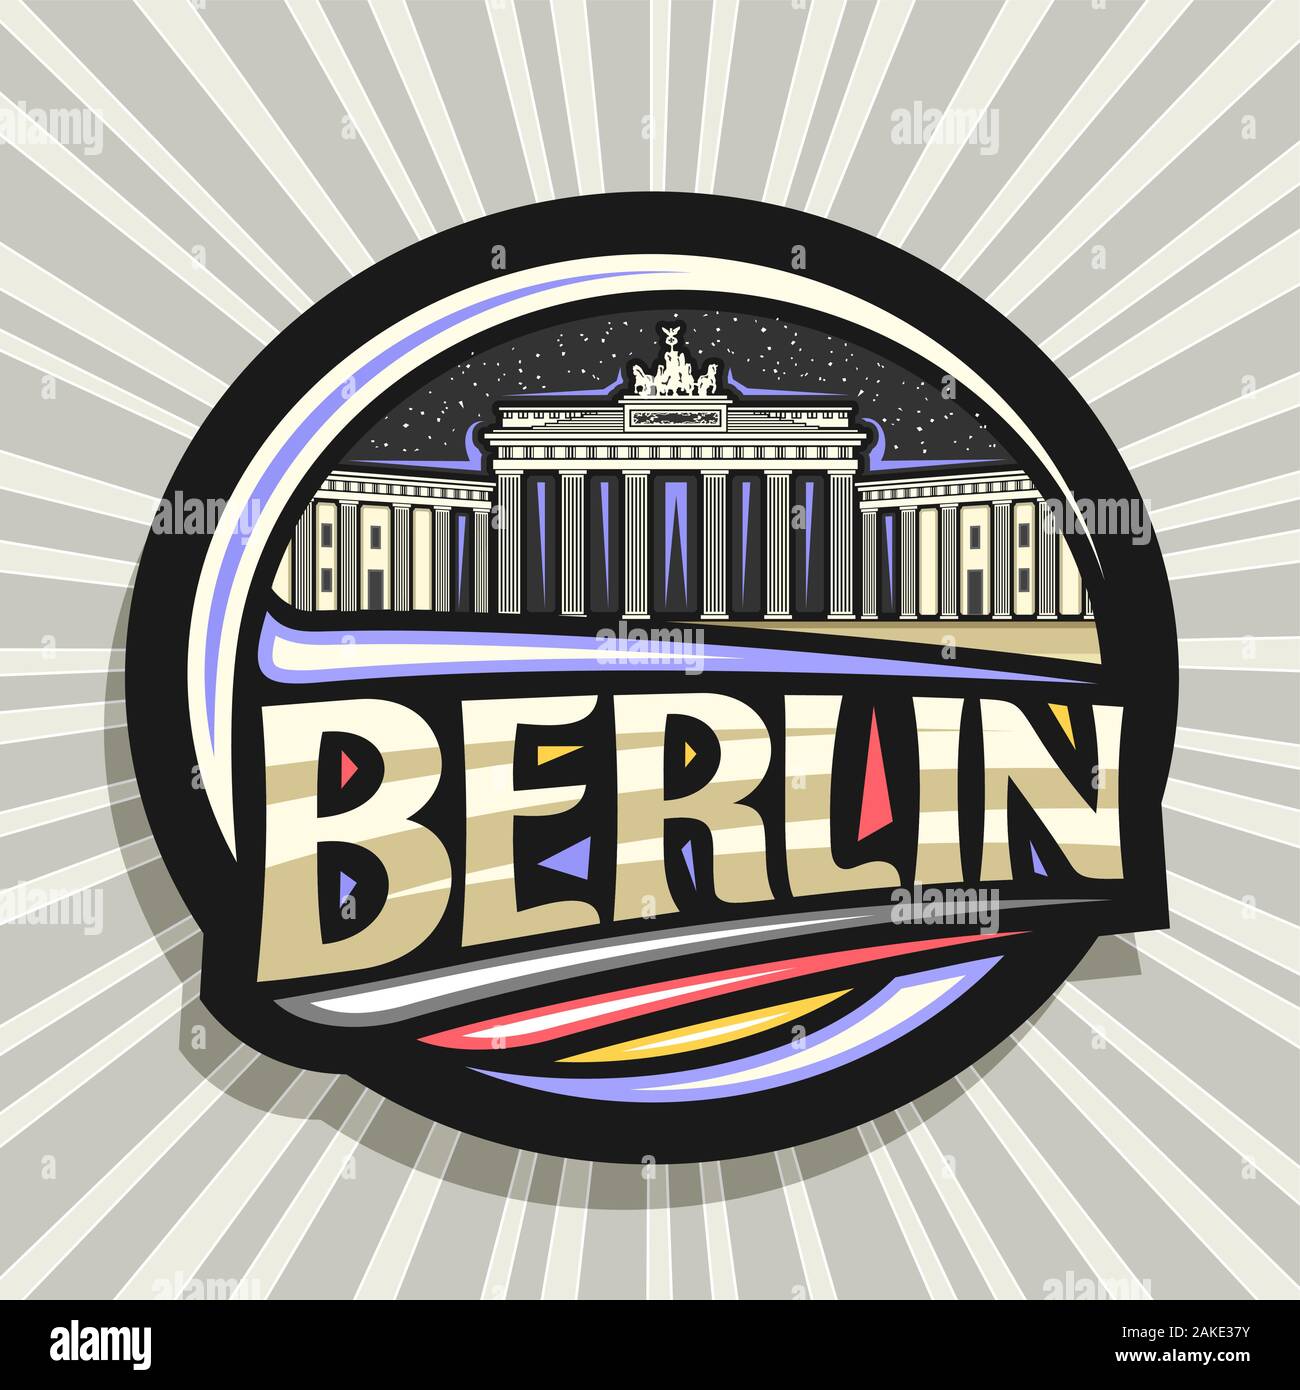 Vektor logo für Berlin, dunkle dekorative Abzeichen mit der Abbildung des Brandenburger Tor am Sternenhimmel Hintergrund, touristische Kühlschrank Magnet mit ursprünglichen Typ Stock Vektor